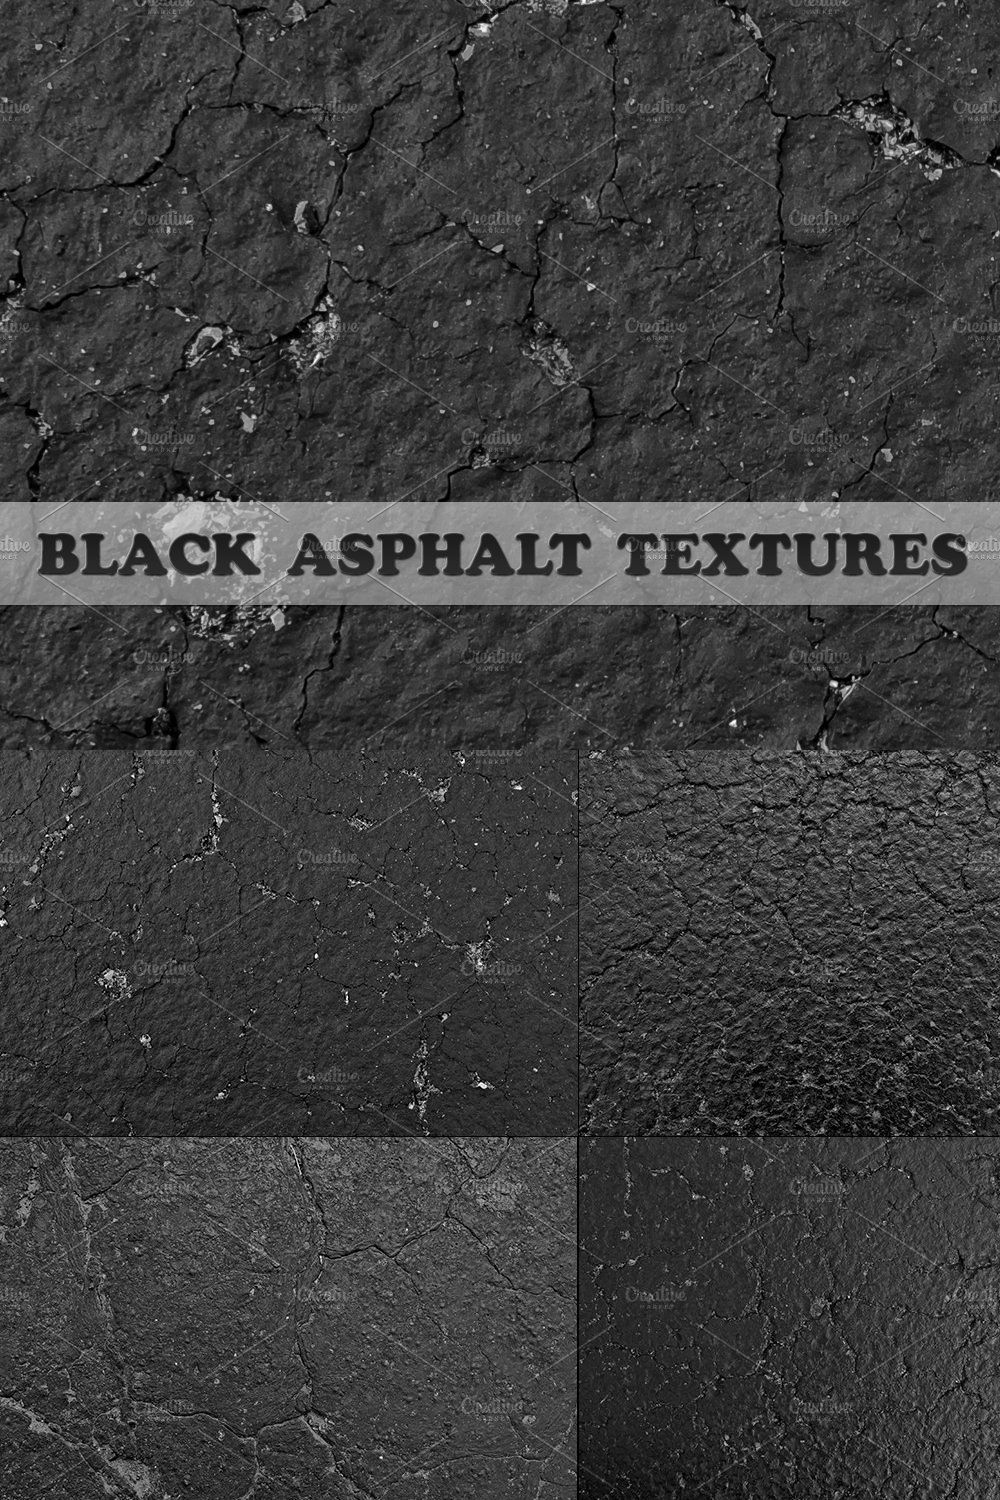 Black Asphalt Textures pinterest preview image.